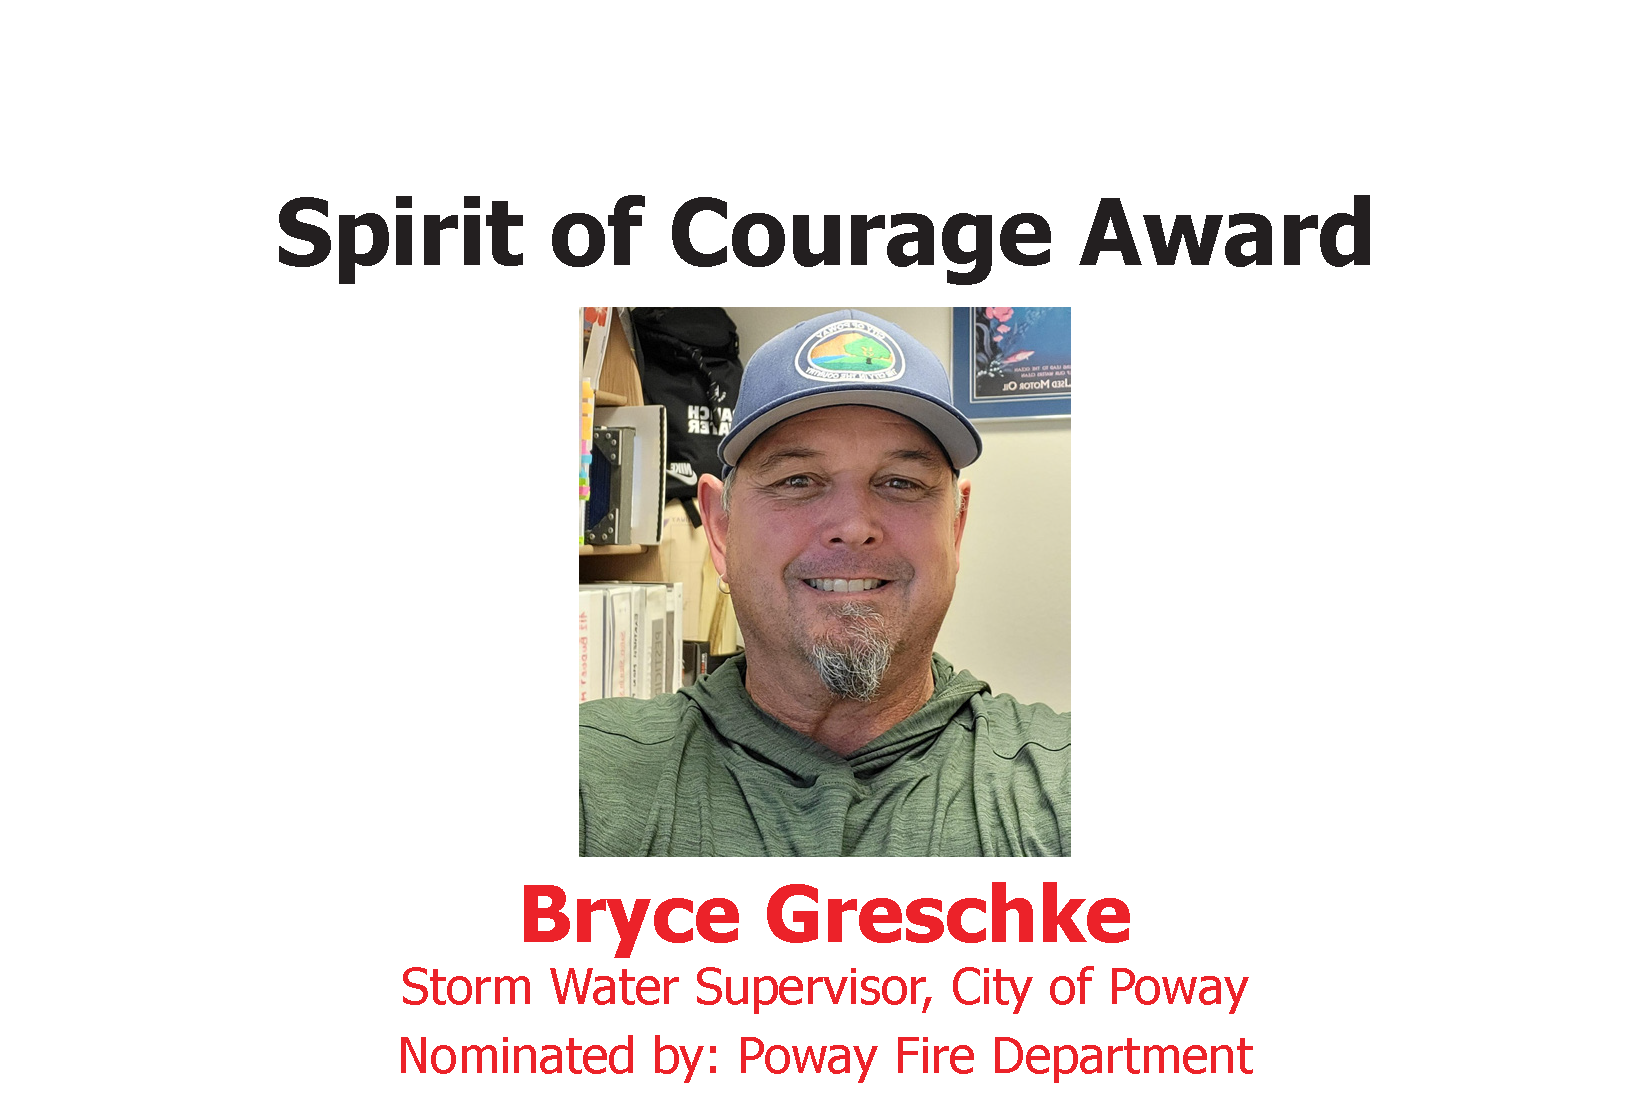 Spirit of Courage Award: Bryce Greschke